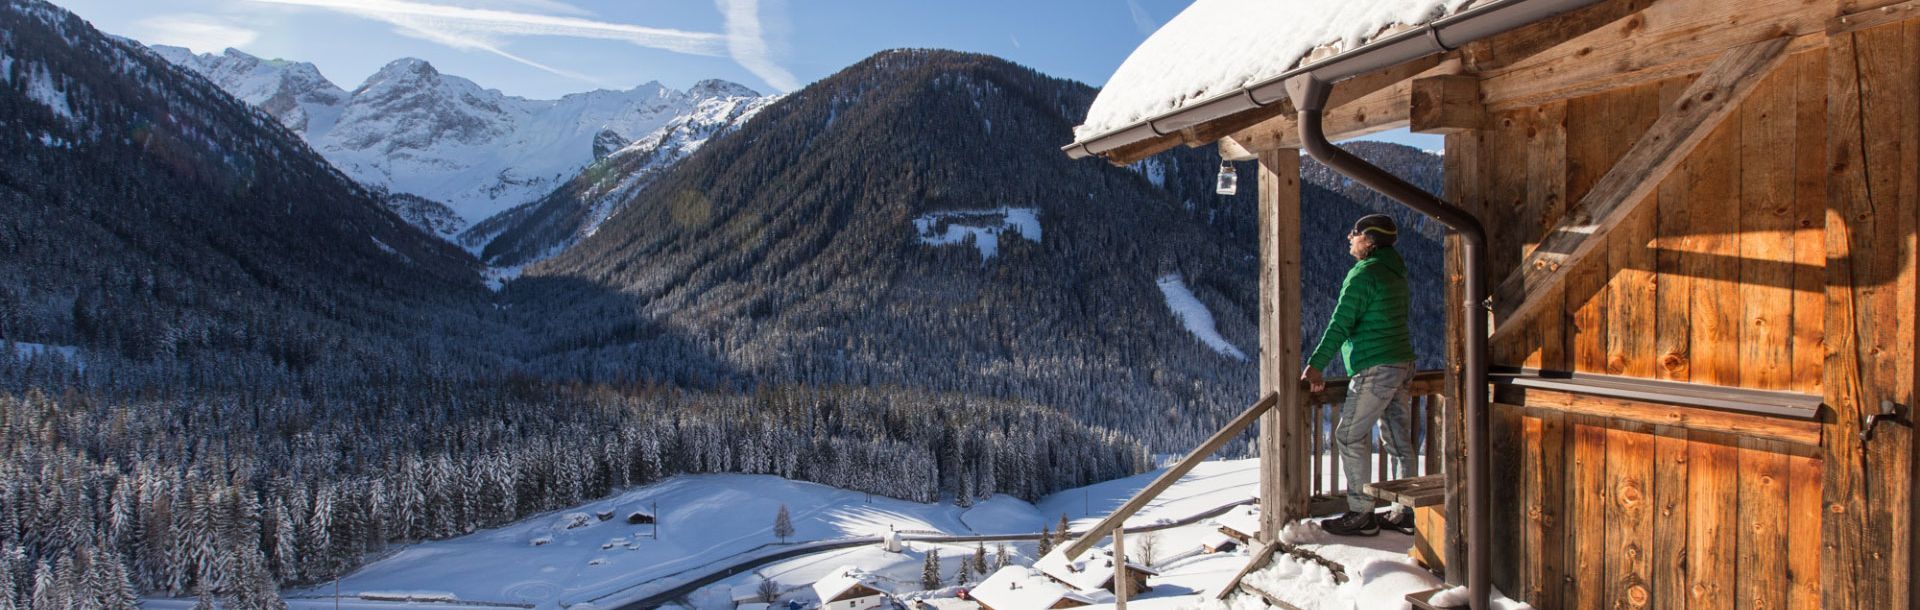 Urlaub in der Erlebnisregion Osttirol | © TVB Osttirol-BergimBild